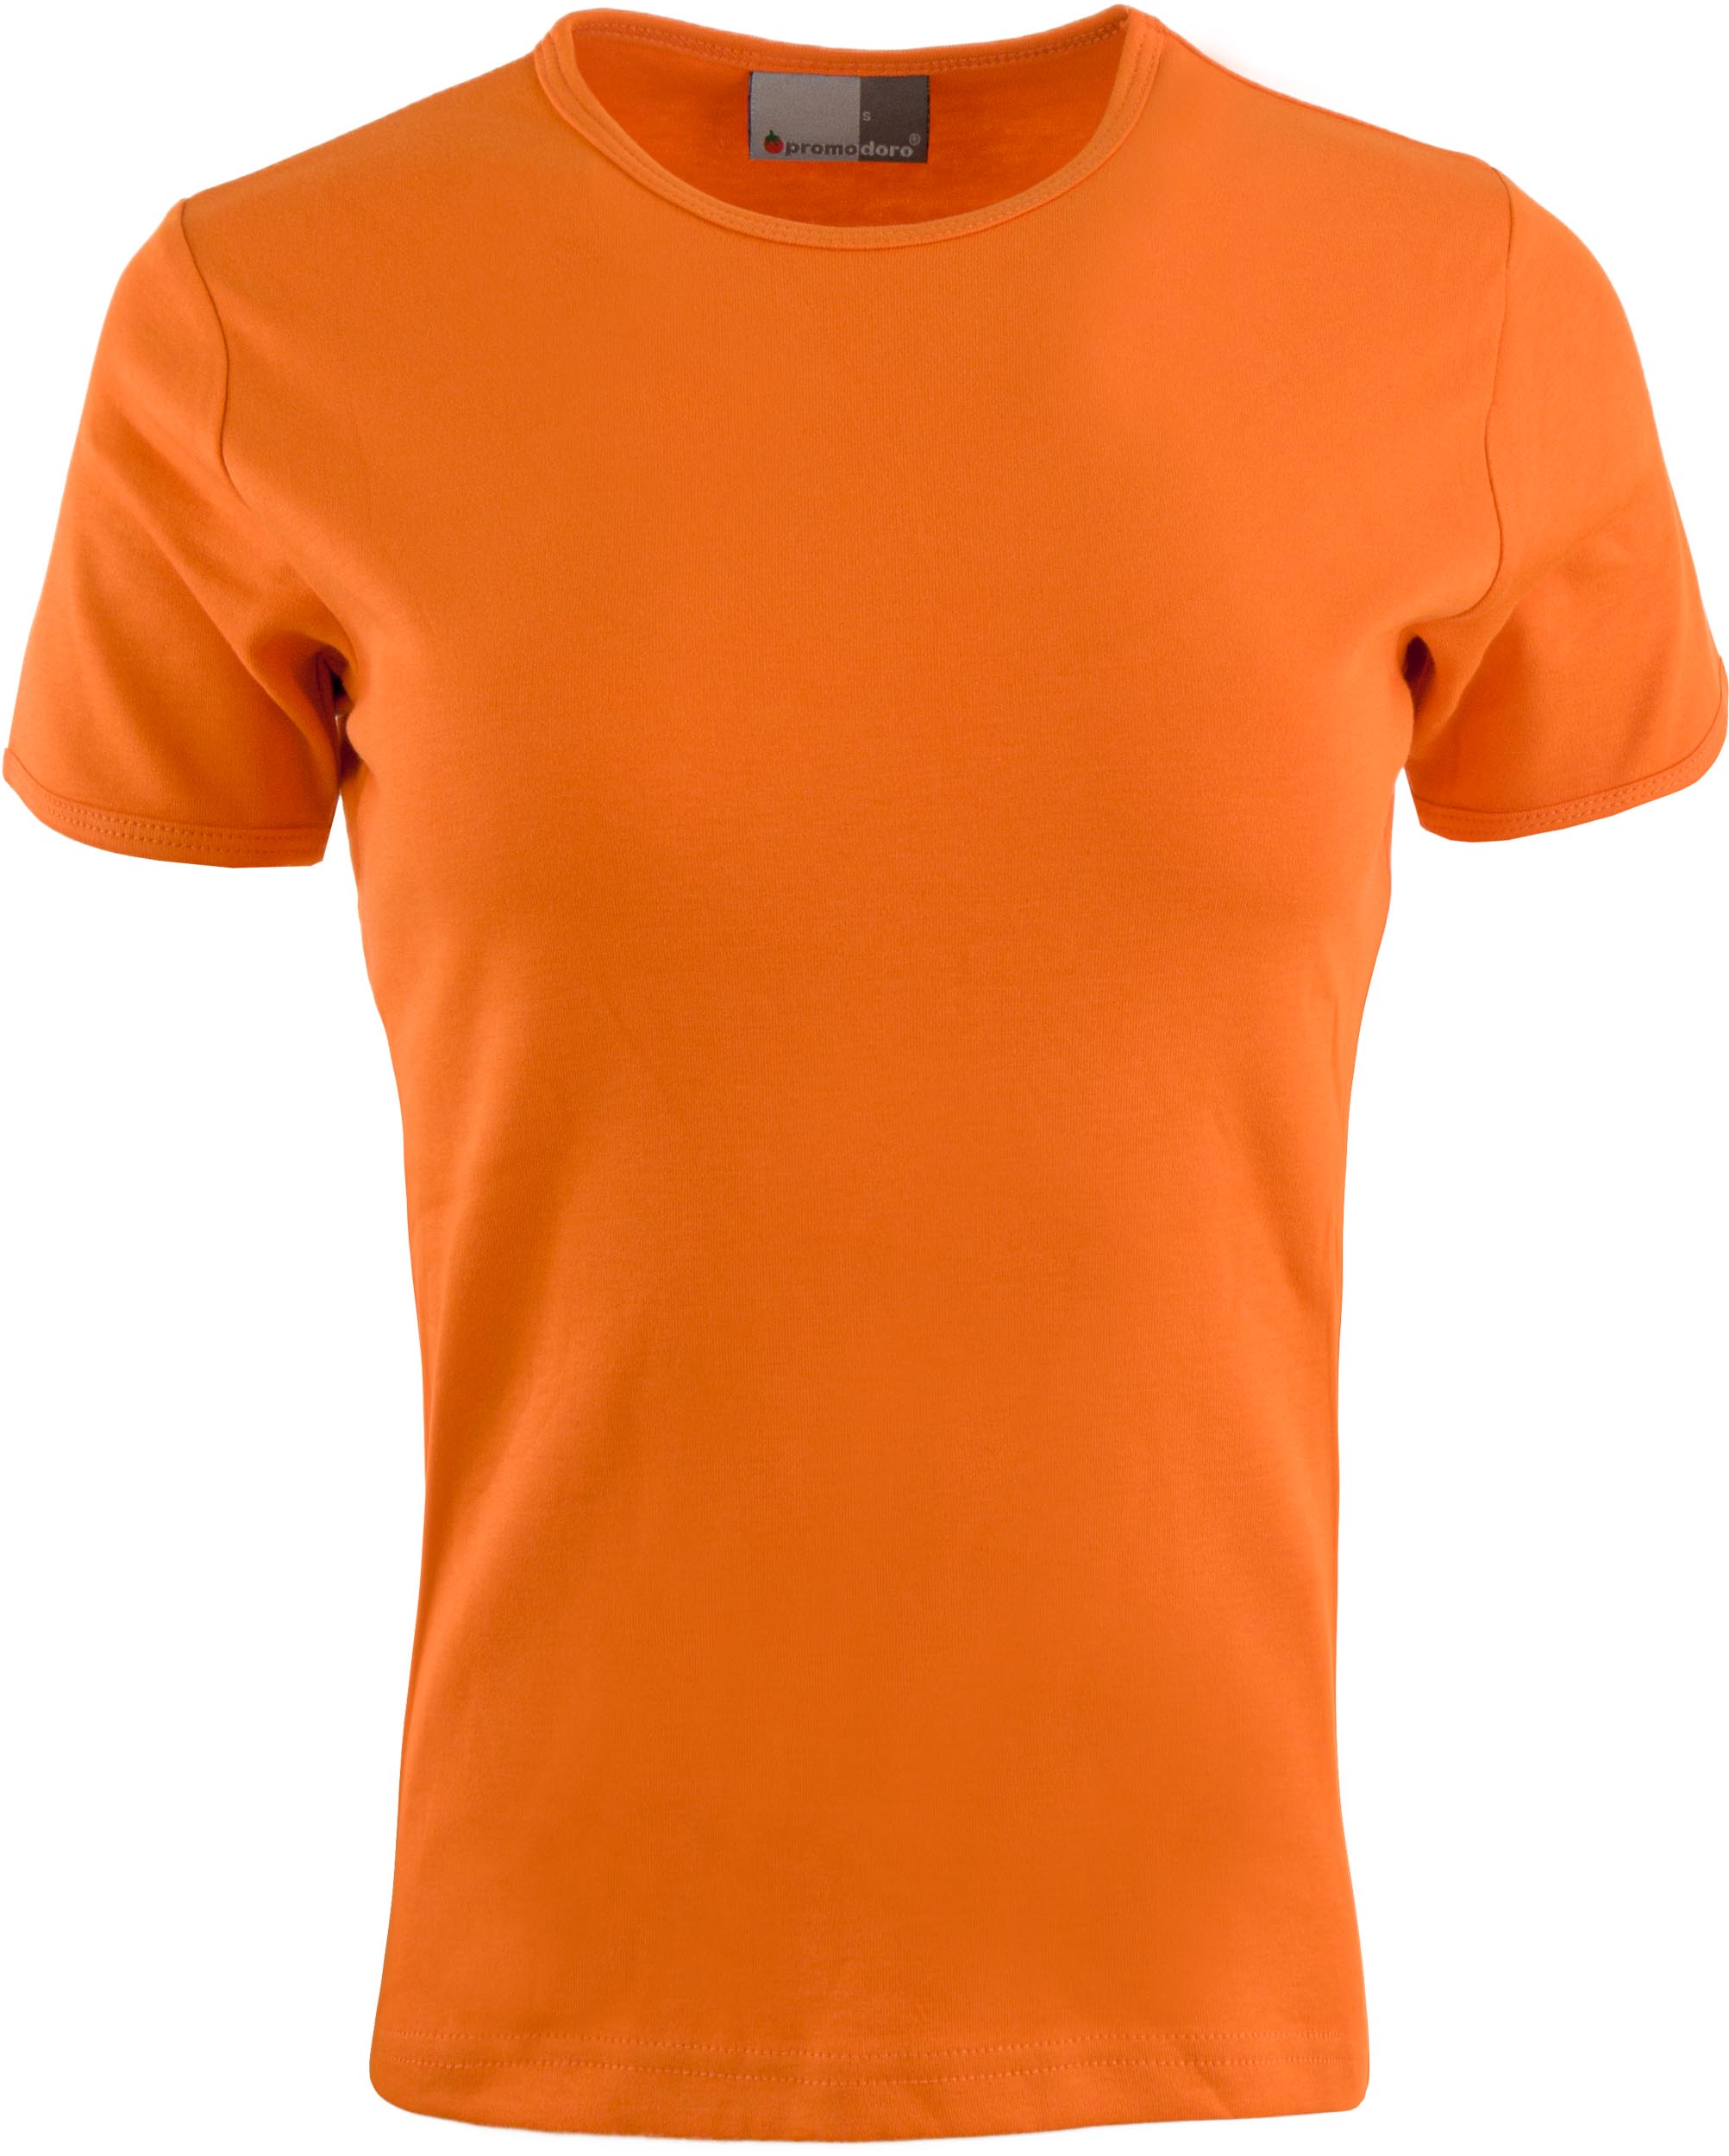 Dámské triko Promodoro Interlock Orange|L